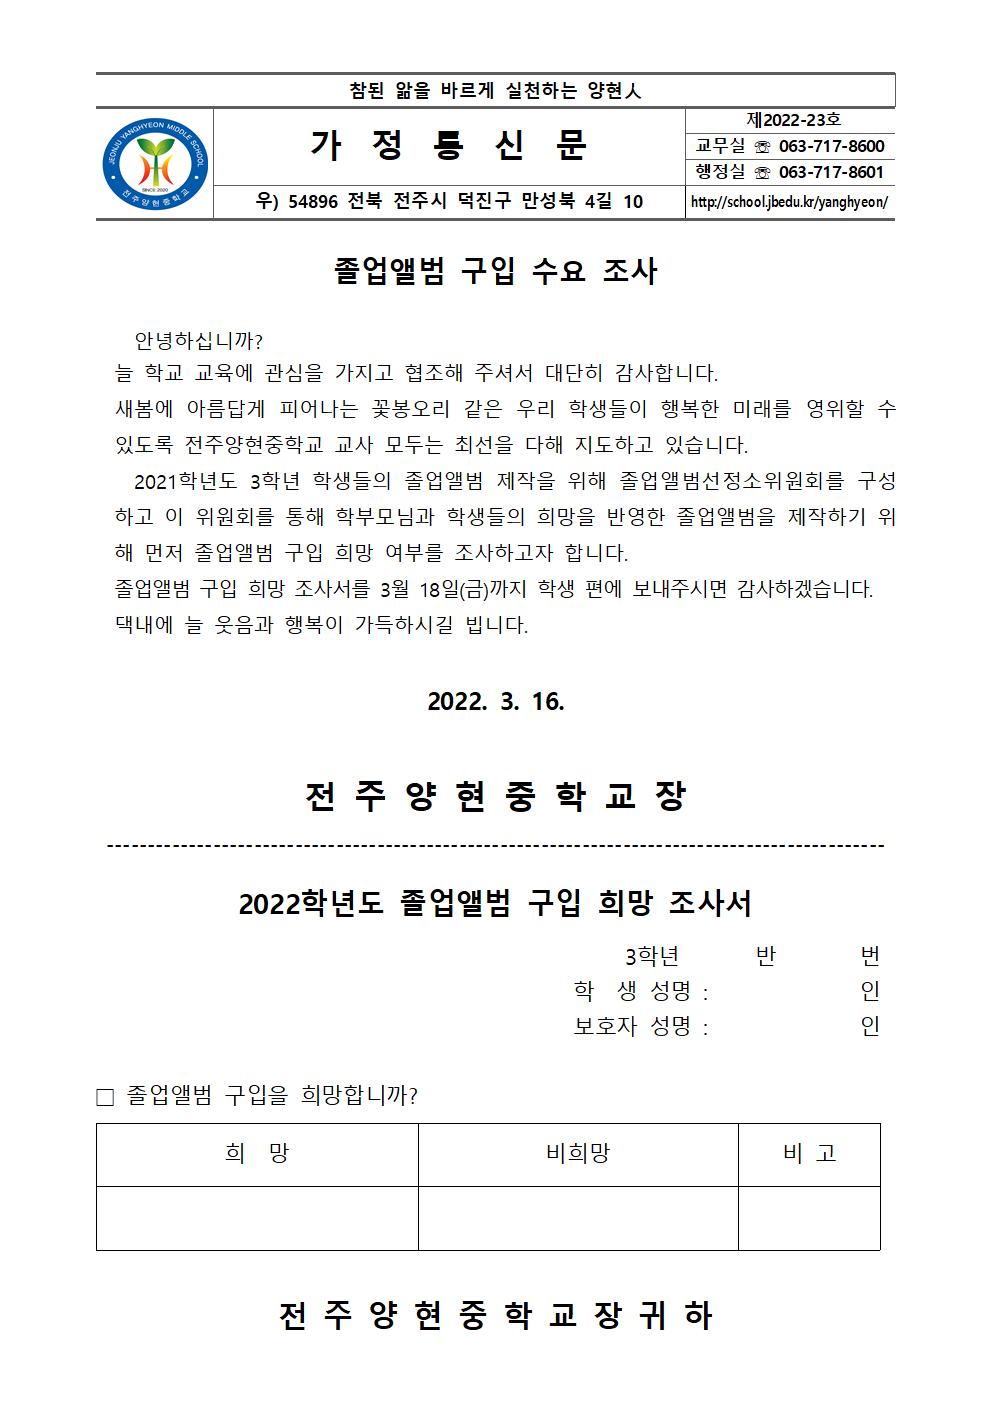 졸업앨범 구입 수요 조사 가정통신문001